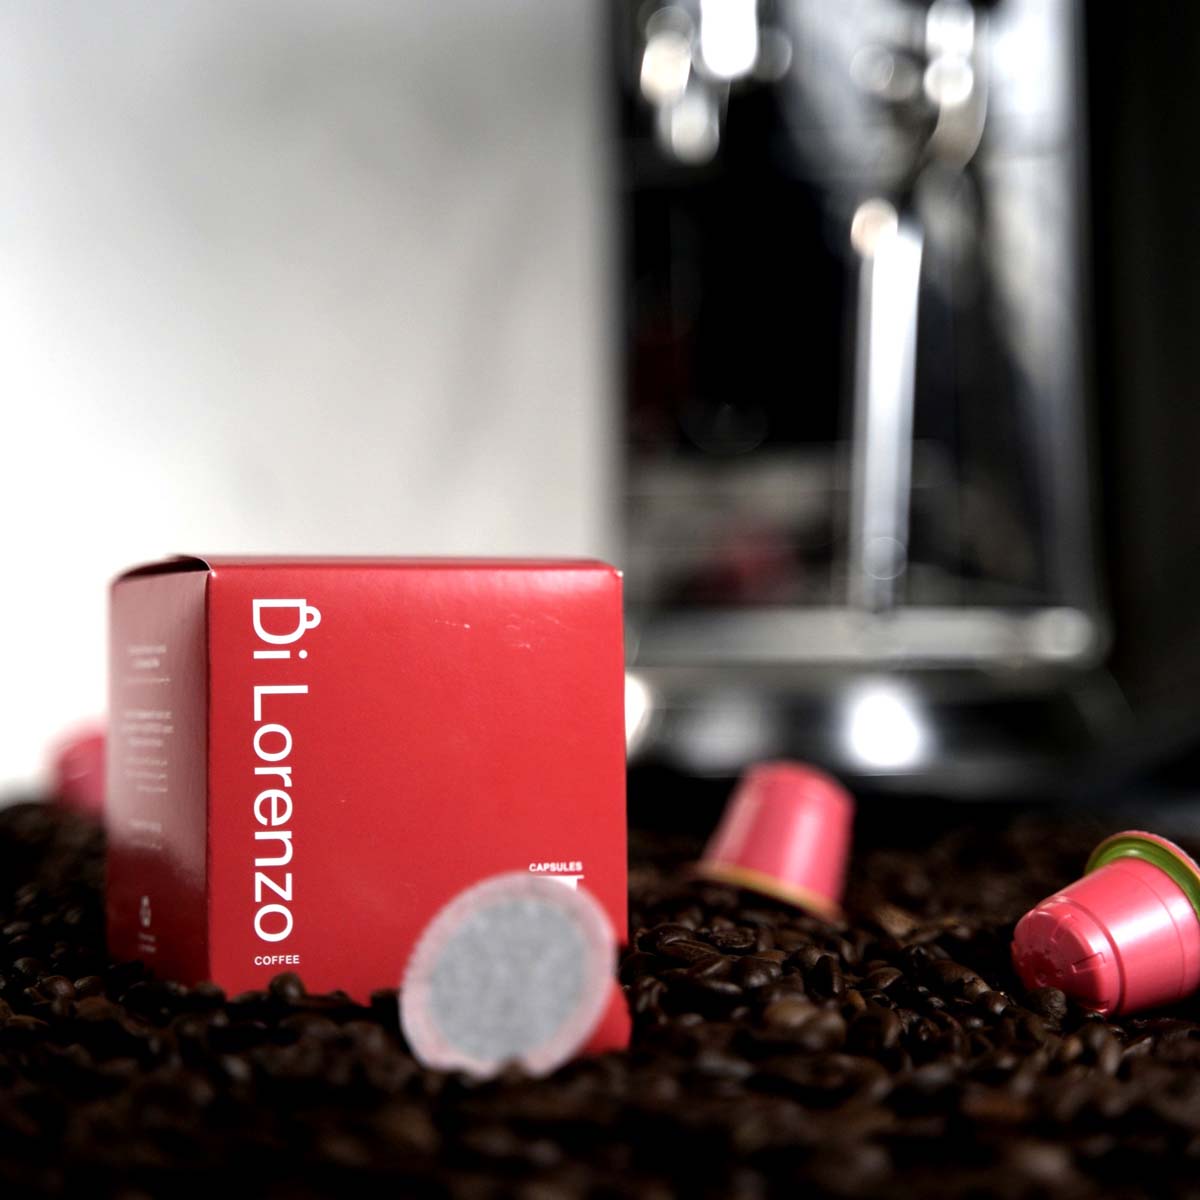 Coffee Capsule Premium Quality "Di Lorenzo" - Nespresso Compatible